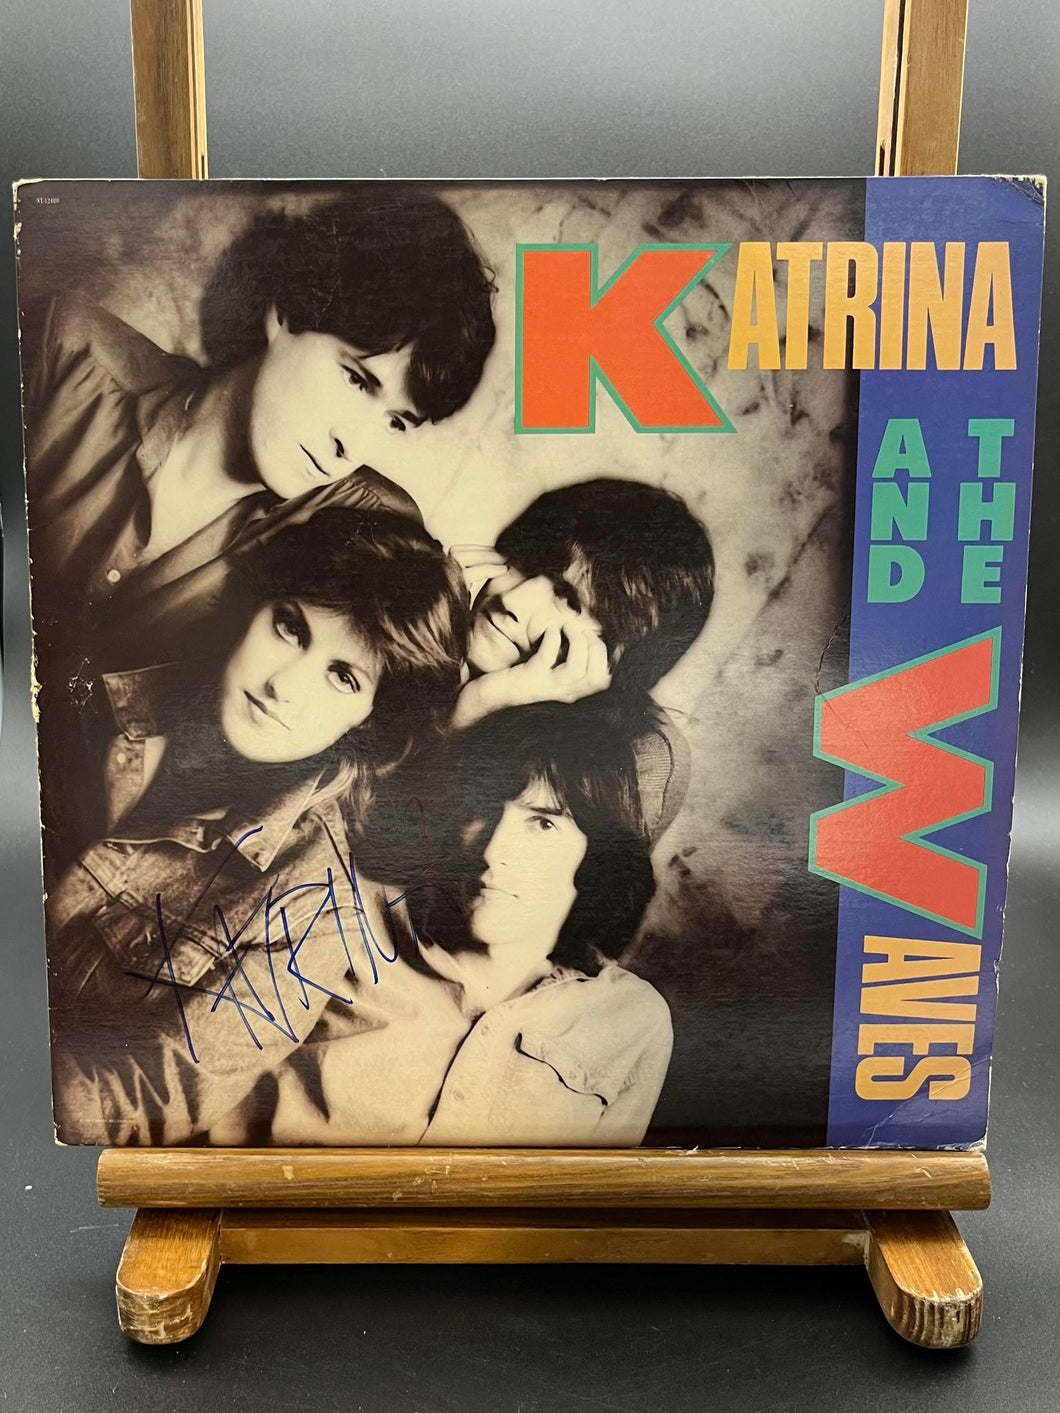 Katrina and the Waves Vinyl Personally Signed by Katrina Leskanich